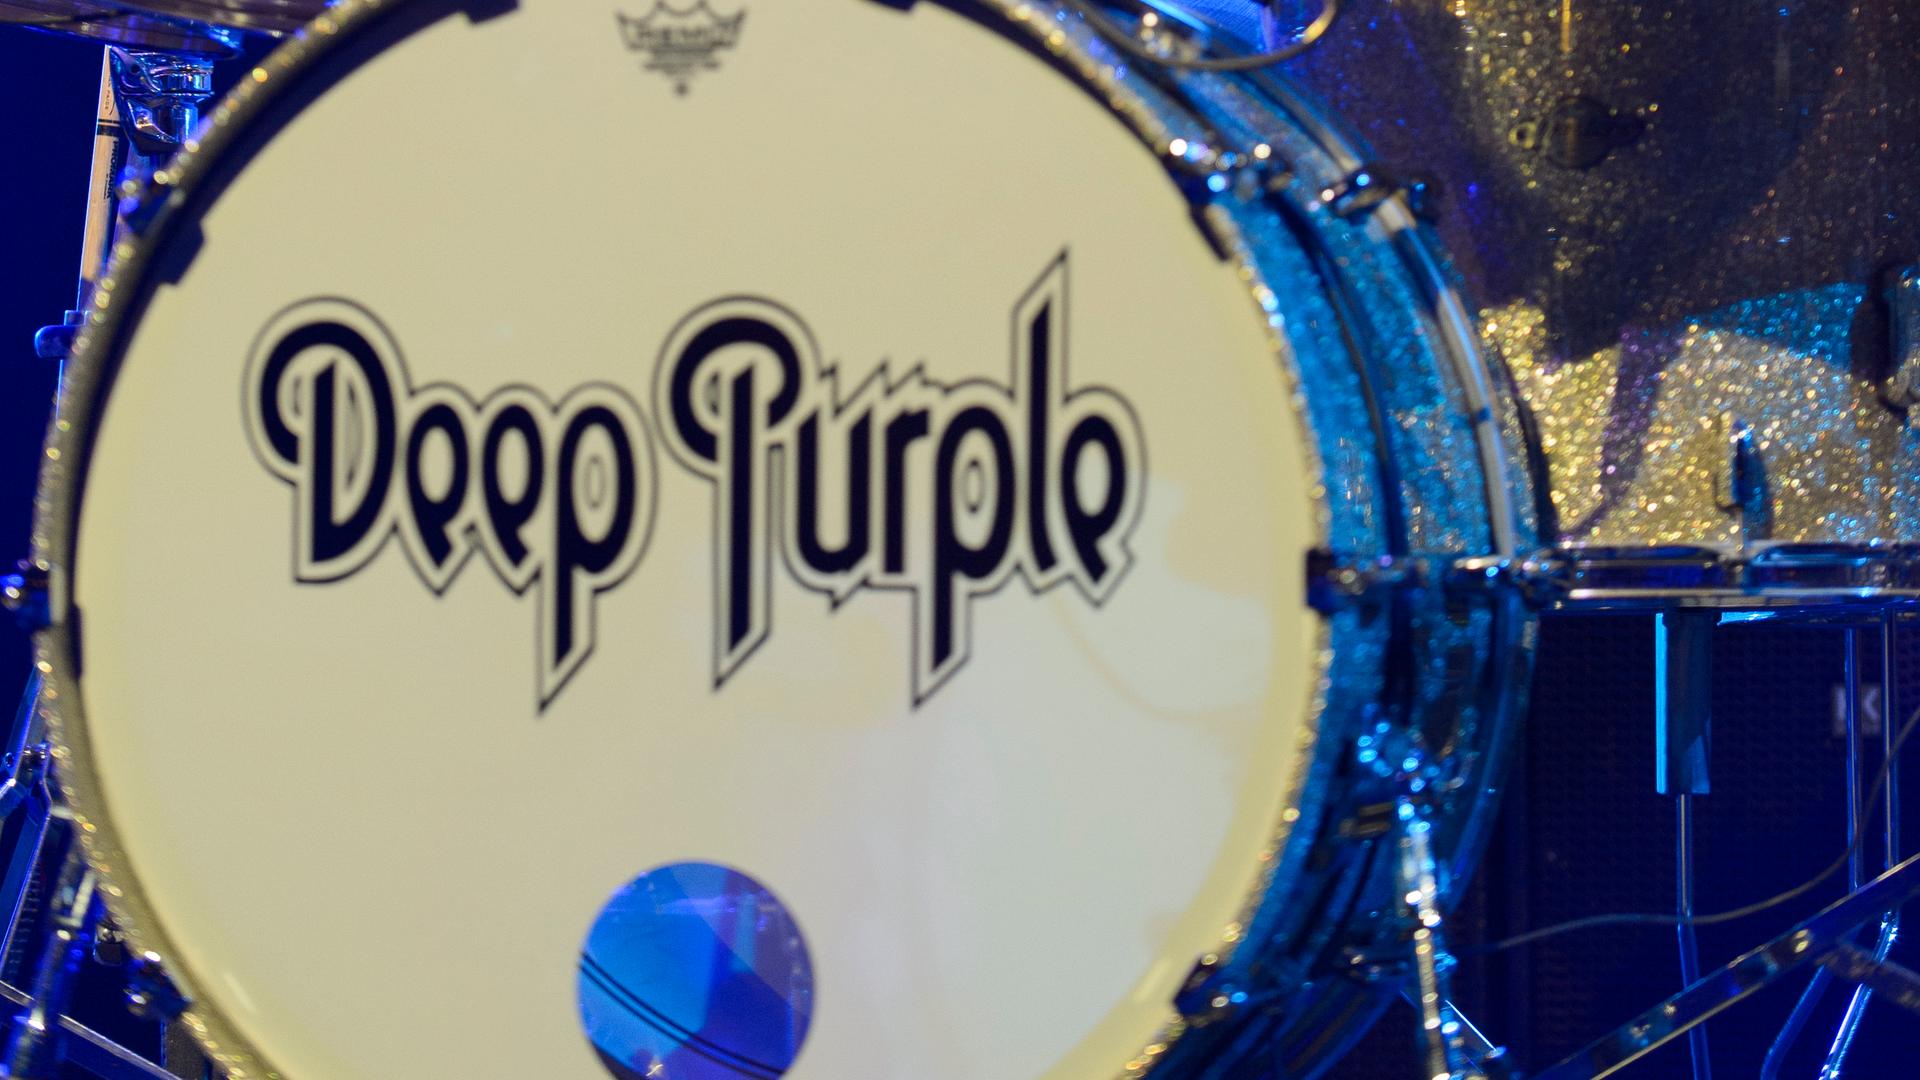 Eine Trommel mit der Aufschrift "Deep Purple"